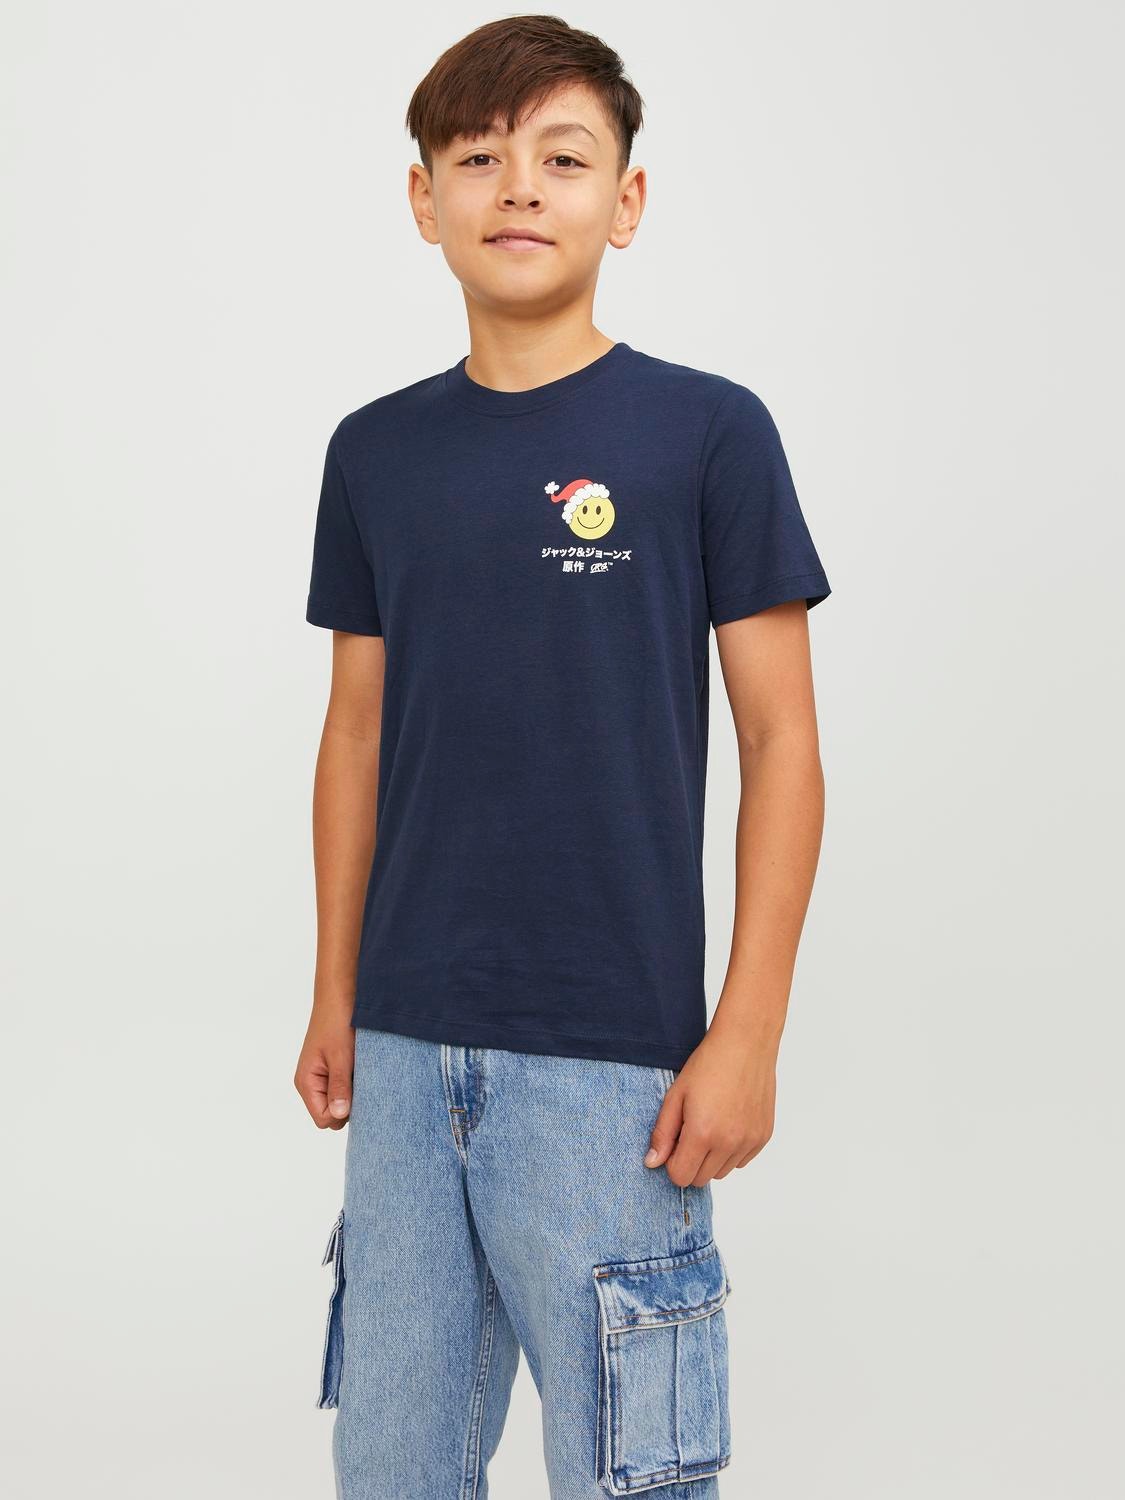 Jack & Jones X-mas T-shirt För pojkar -Navy Blazer - 12247766